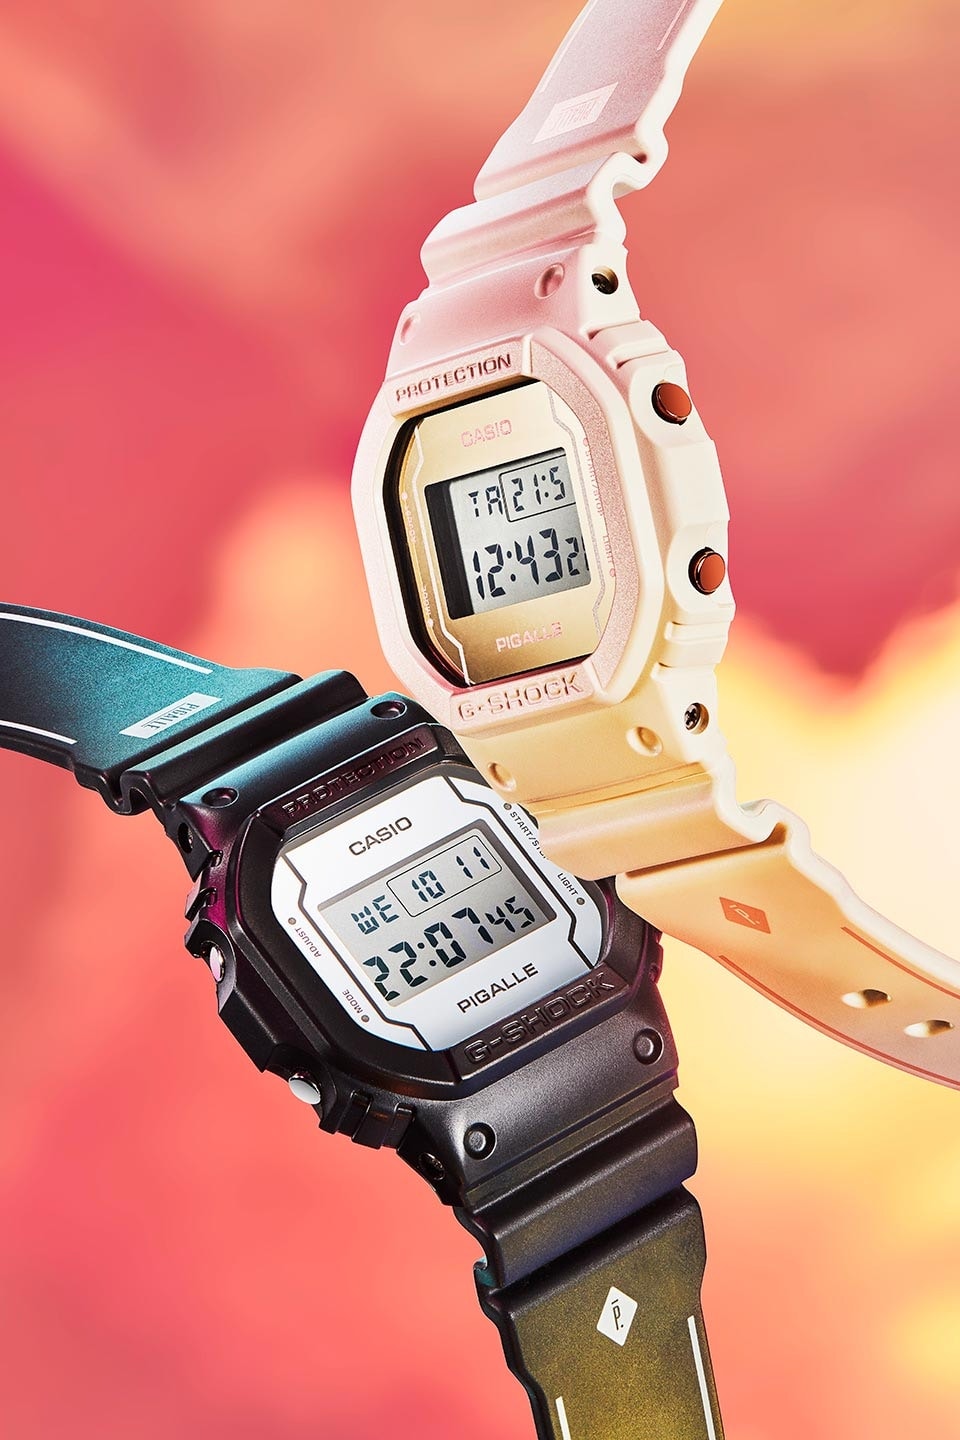 Pigalle x Casio G-SHOCK 聯名 DW-5600 腕錶系列